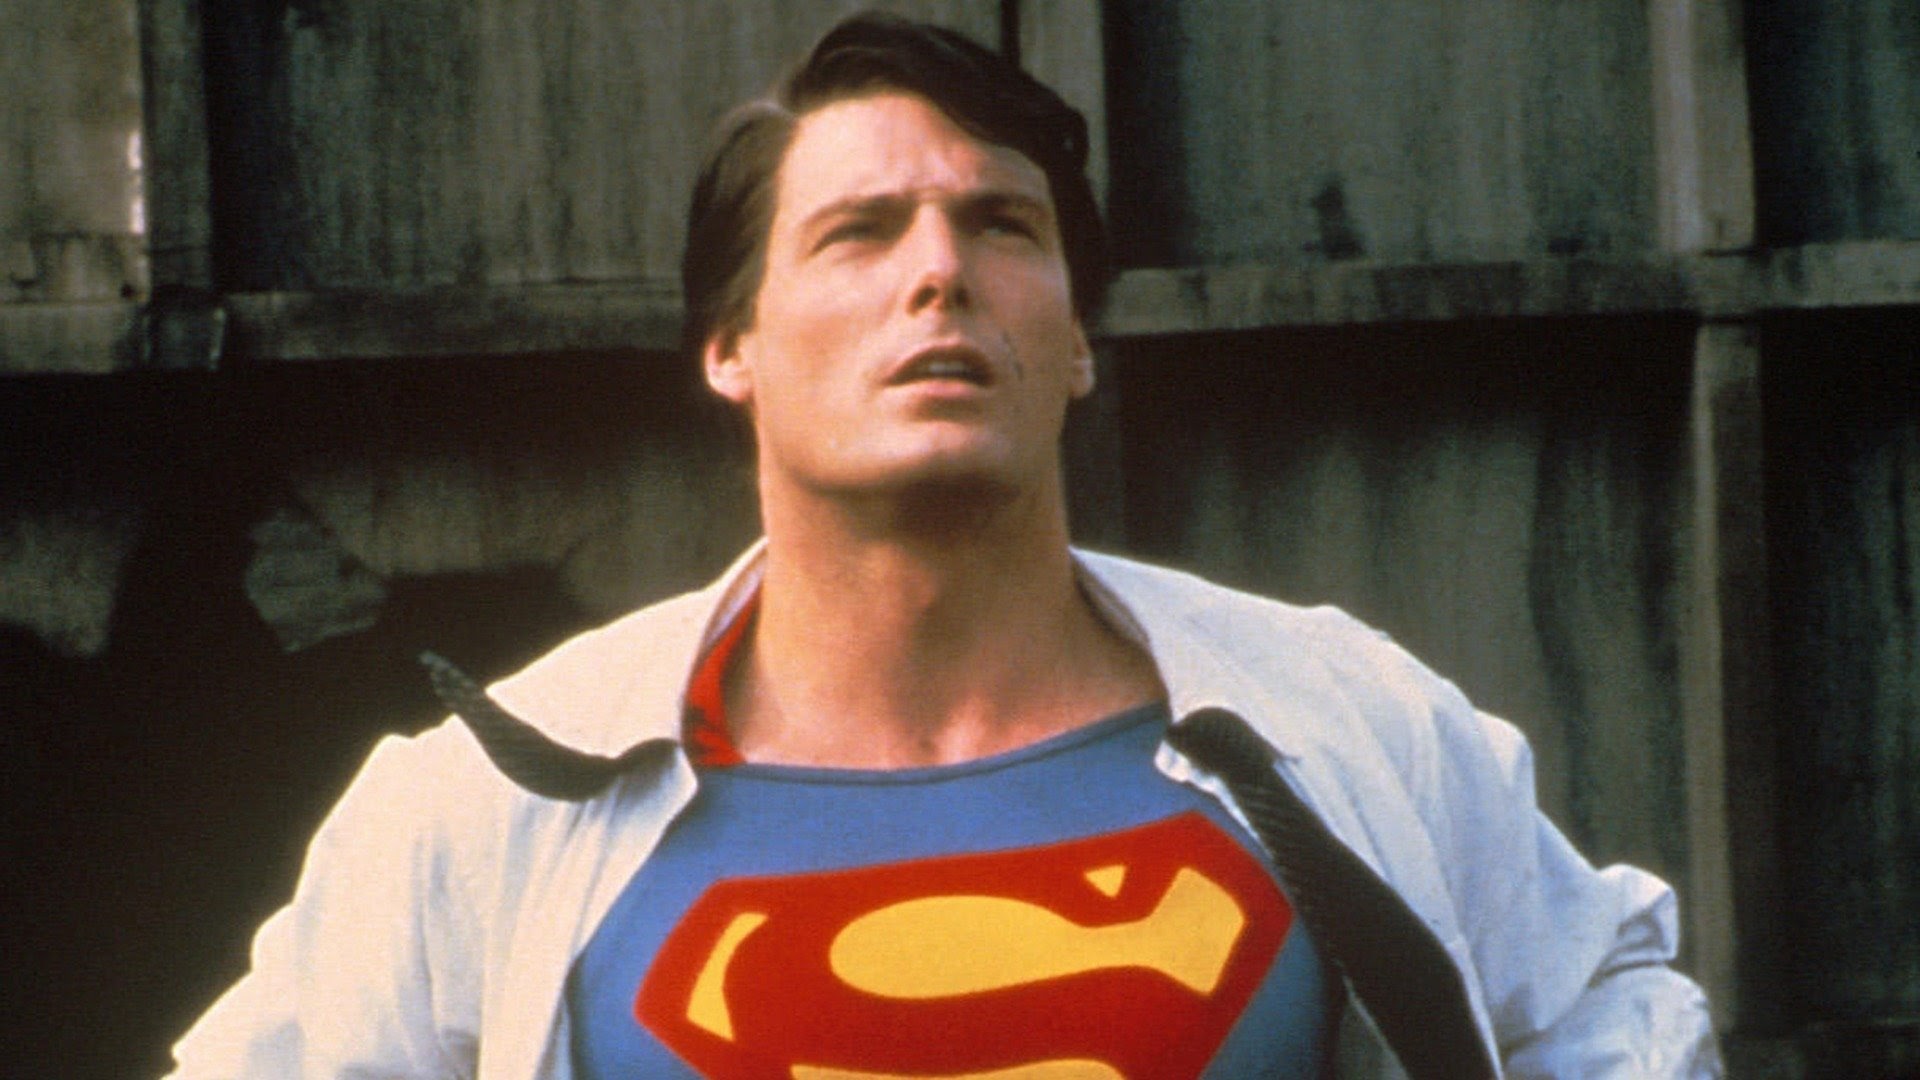 Indicações De Filmes & Series - Superman: Homem do Amanhã Ano de  Lançamento: 2020 Gênero: Animação, Ação Duração: 1h 26 min IMDb: 7.0  SINOPSE: A trama acompanha Clark Kent como um estagiário